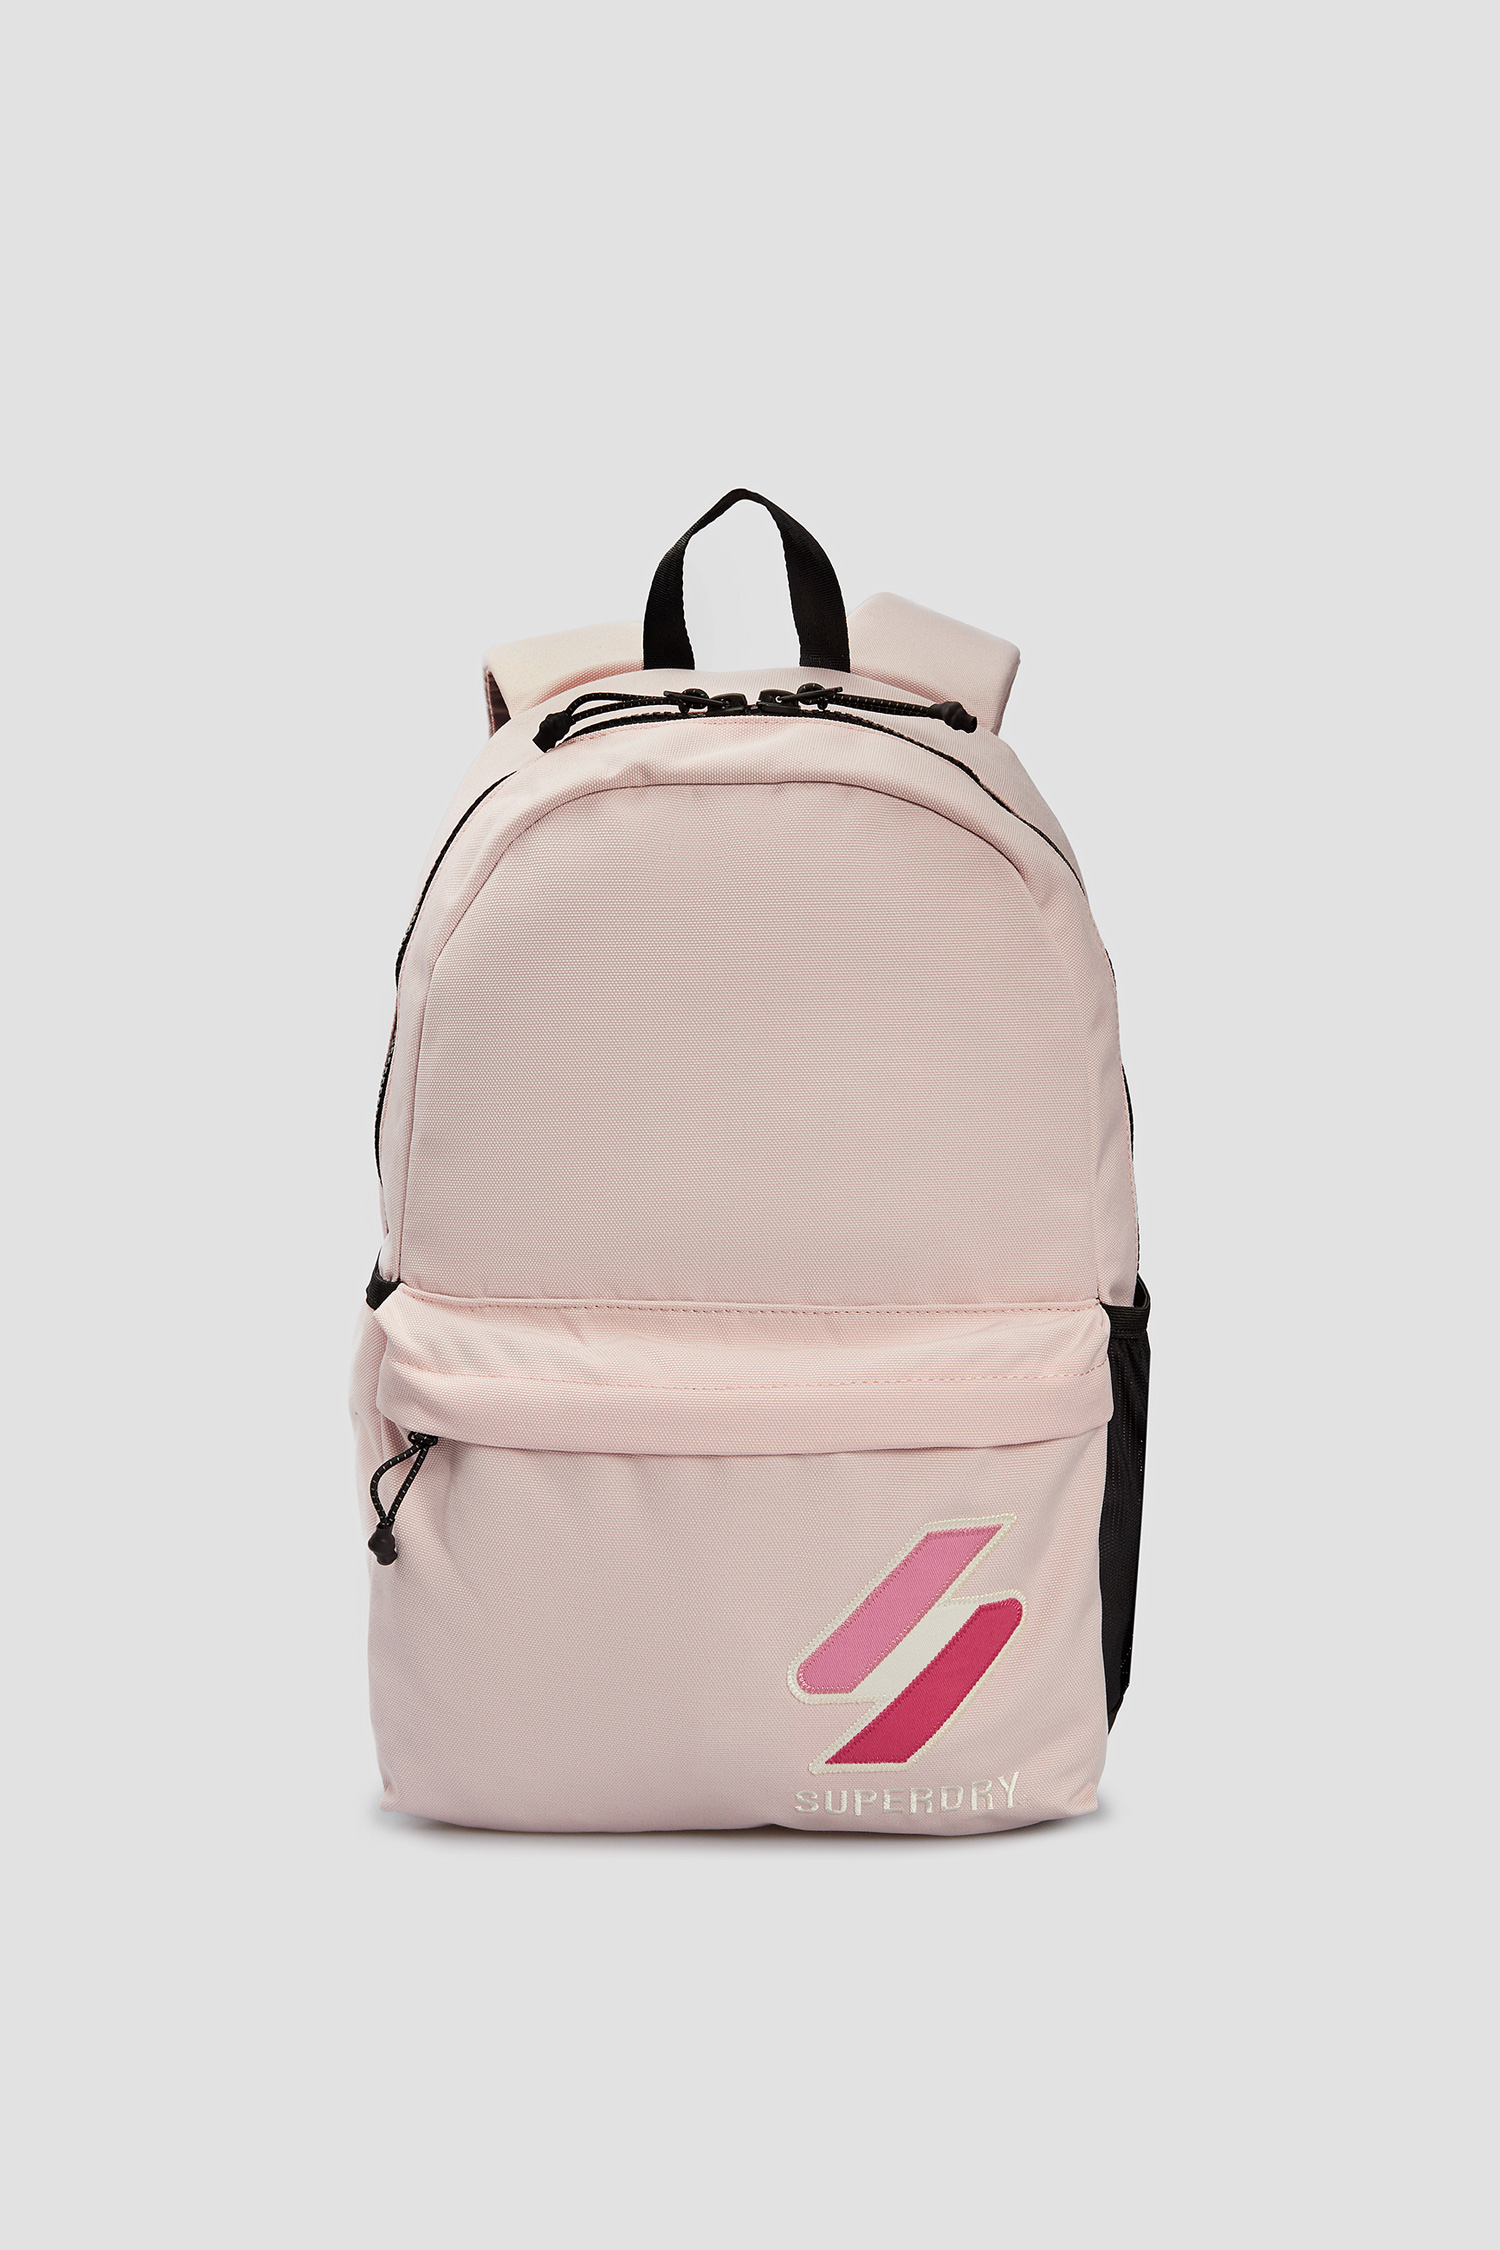 Мужской розовый рюкзак SuperDry M9110532A;5YA